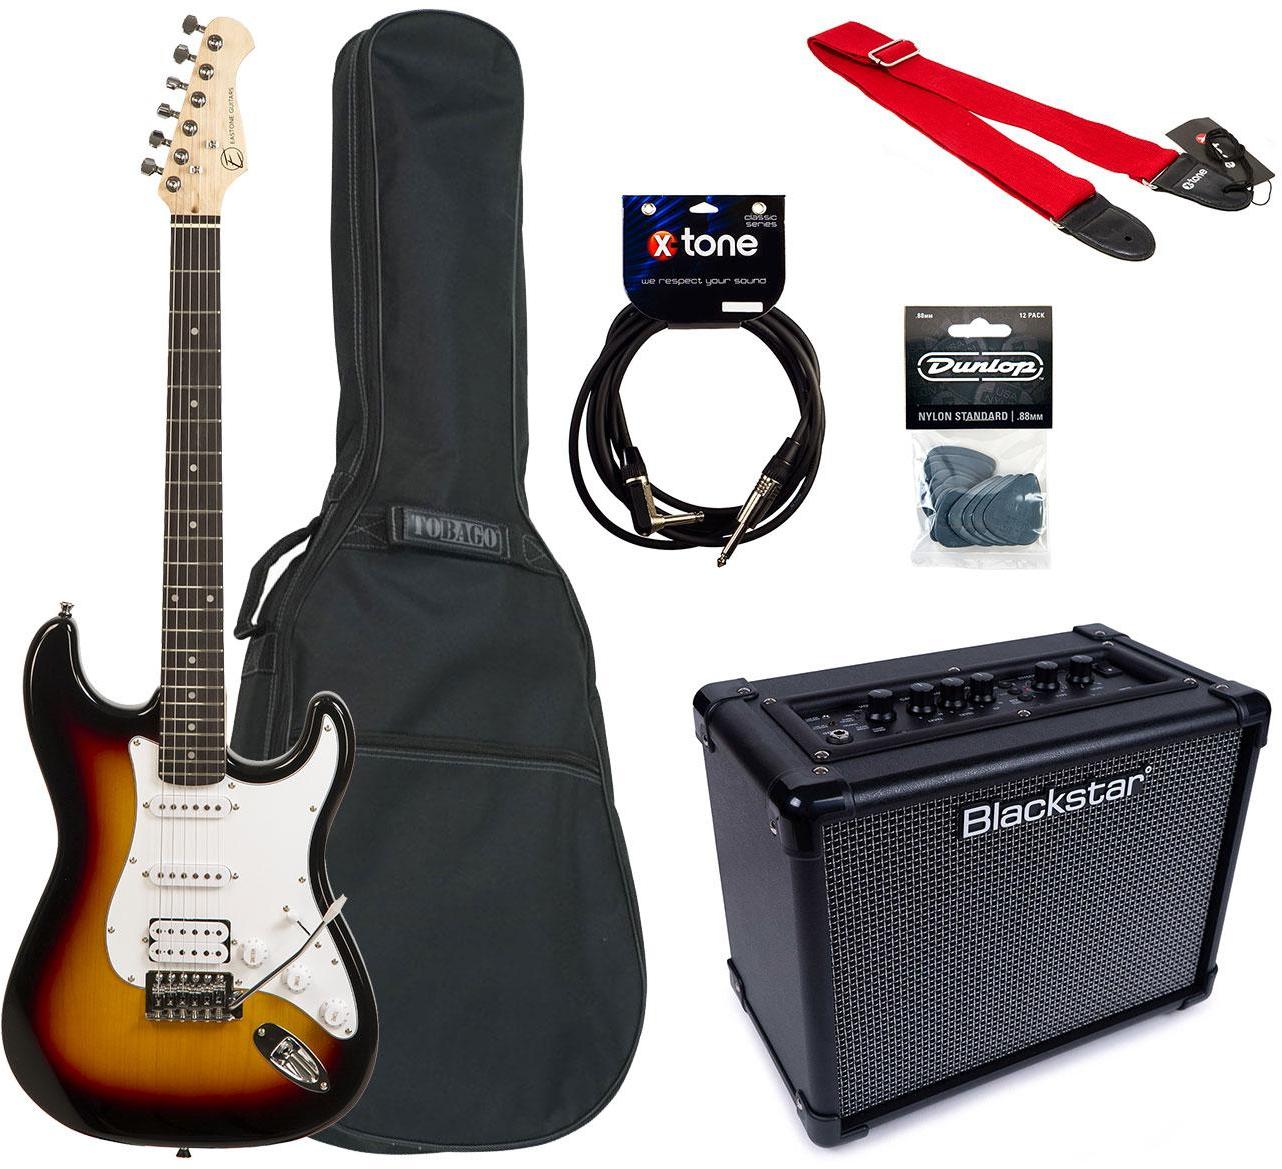 Pack guitare électrique Eastone STR80T LPB + Blackstar ID:Core V3 Stereo 10 +Accessories - Sunburst